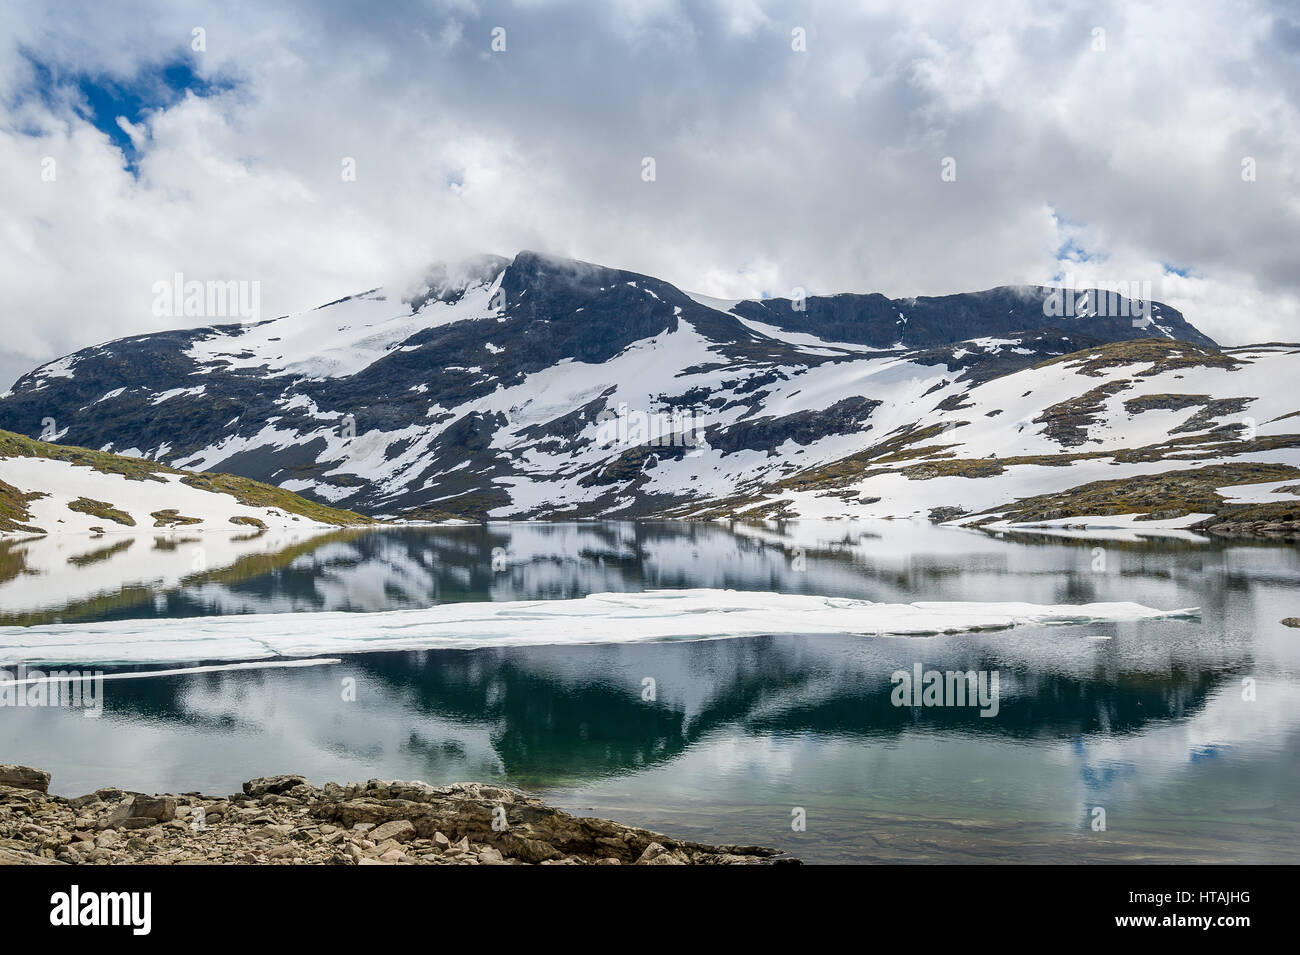 Paysage de montagne avec des rochers enneigés et de glace fondue lac avec belle réflexion. Road 55, route touristique nationale, la Norvège. Banque D'Images